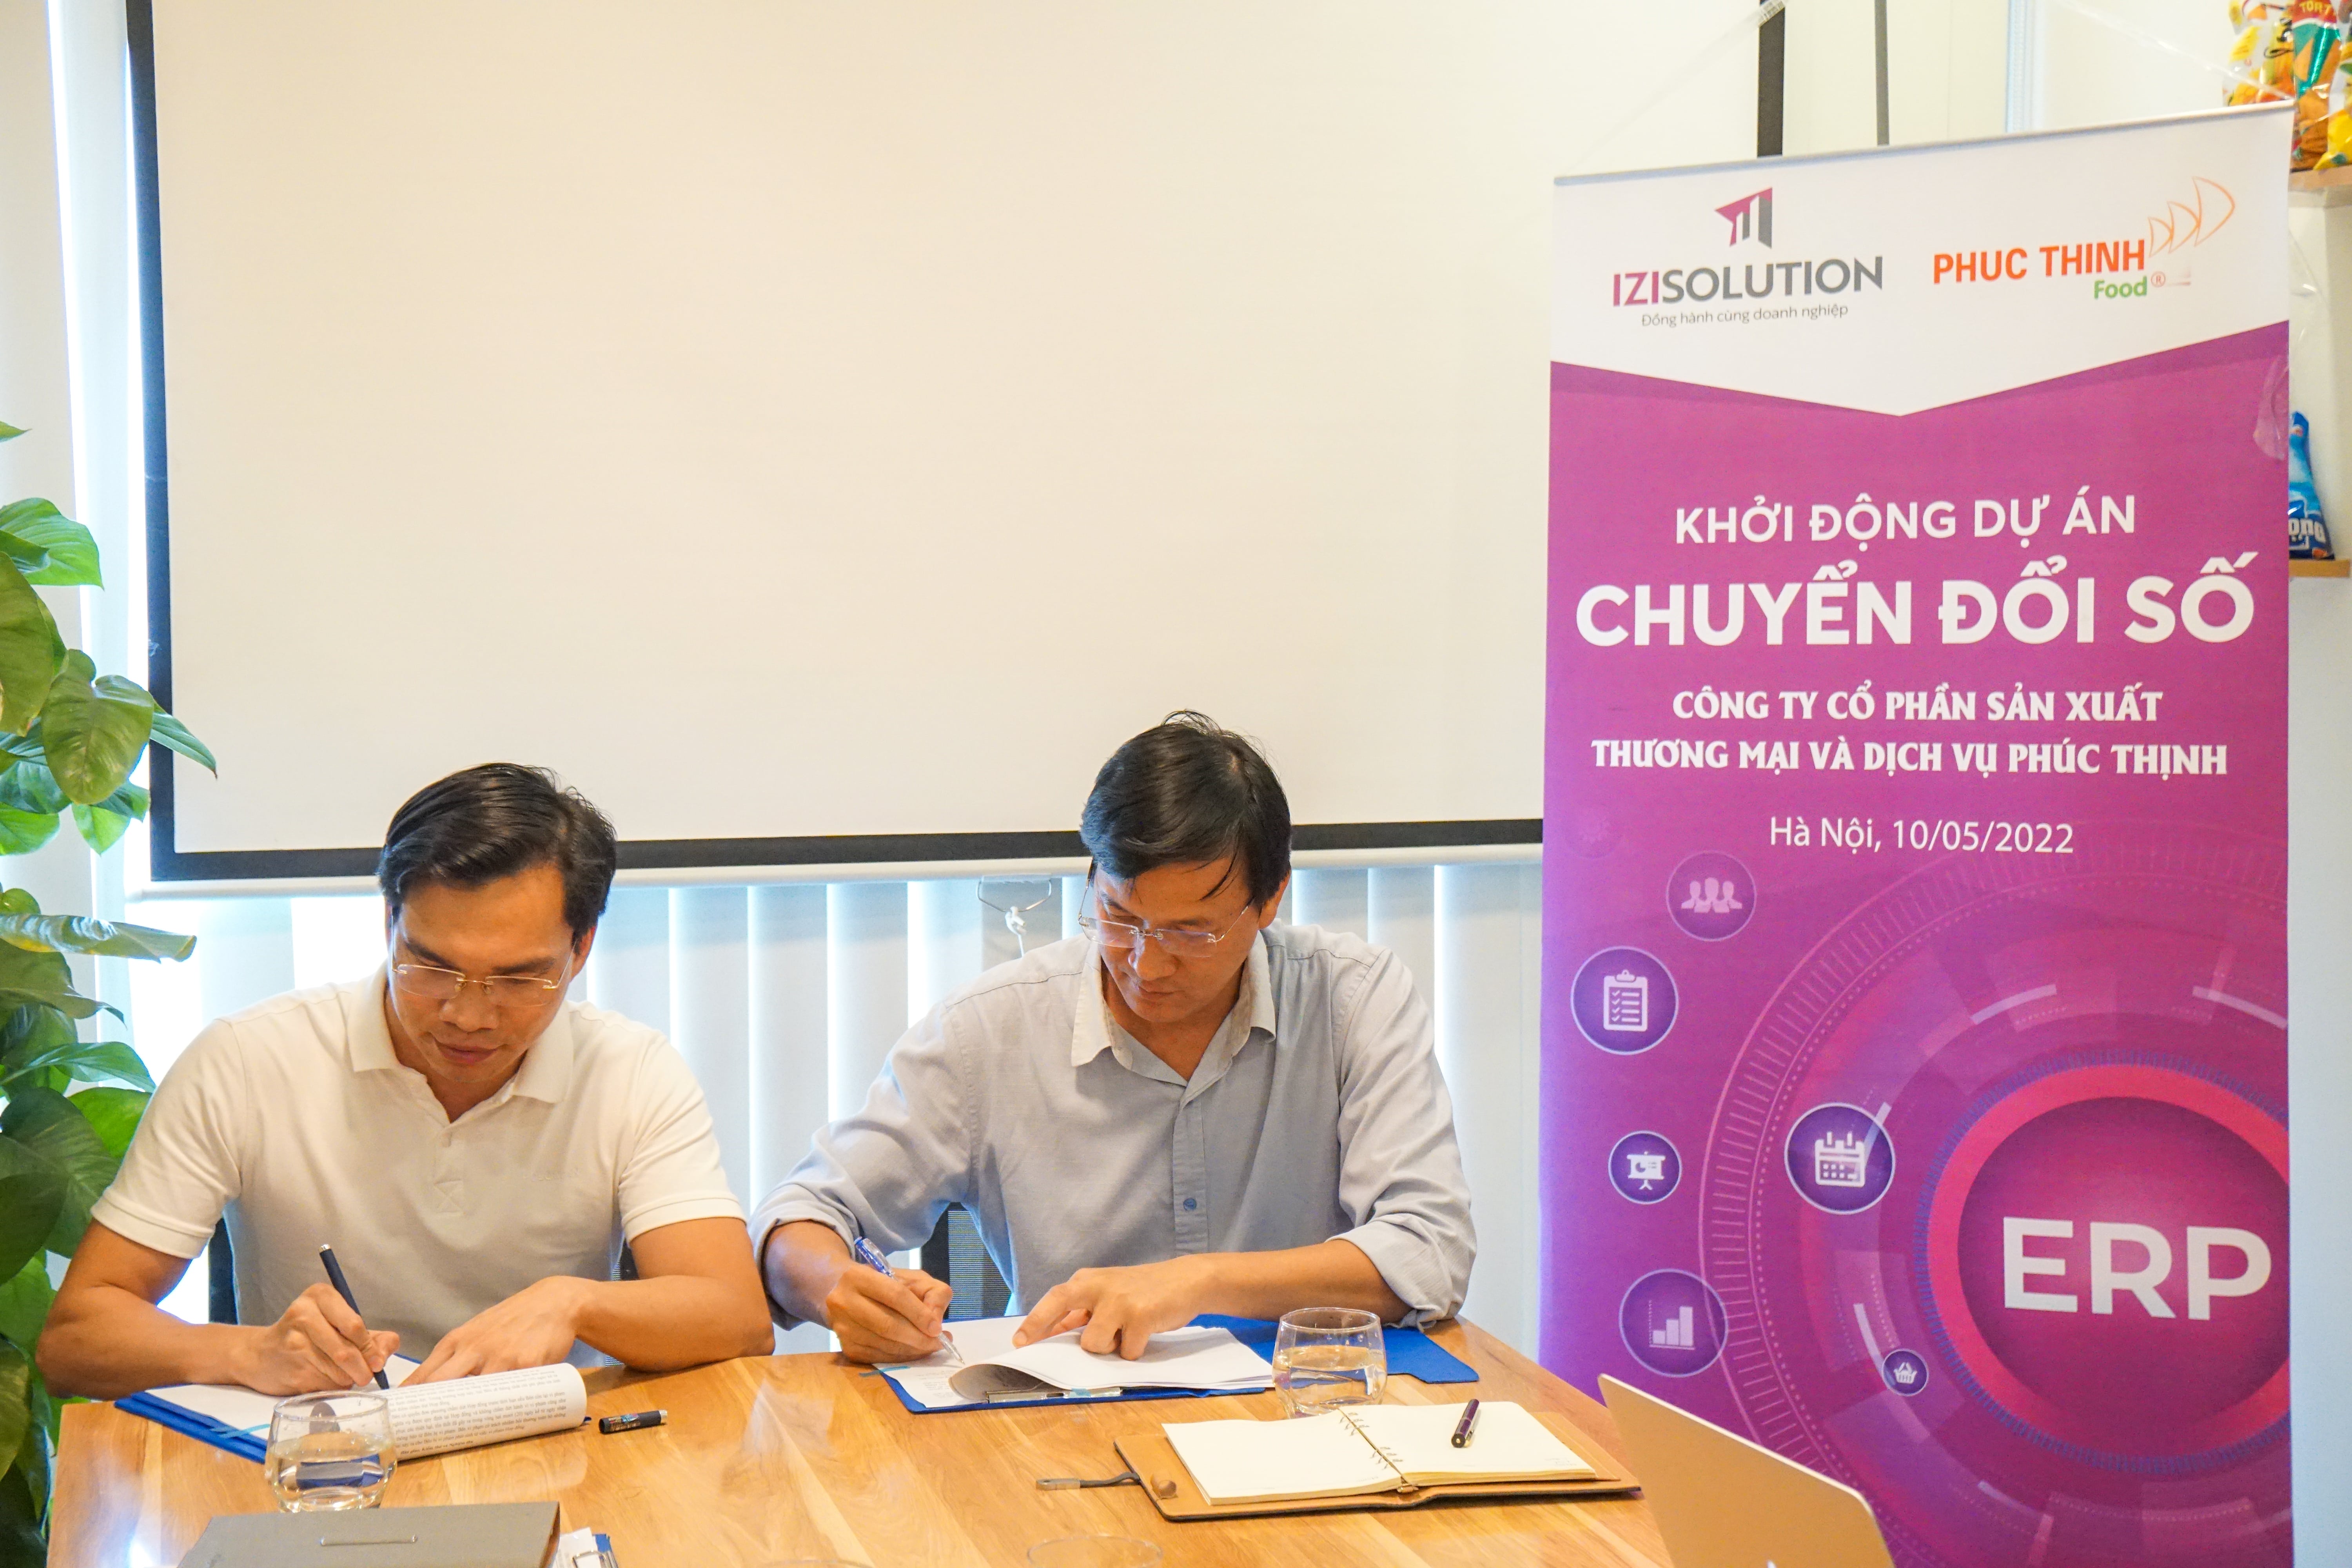 IZISolution và Phúc Thịnh Group khởi động dự án chuyển đổi số 2